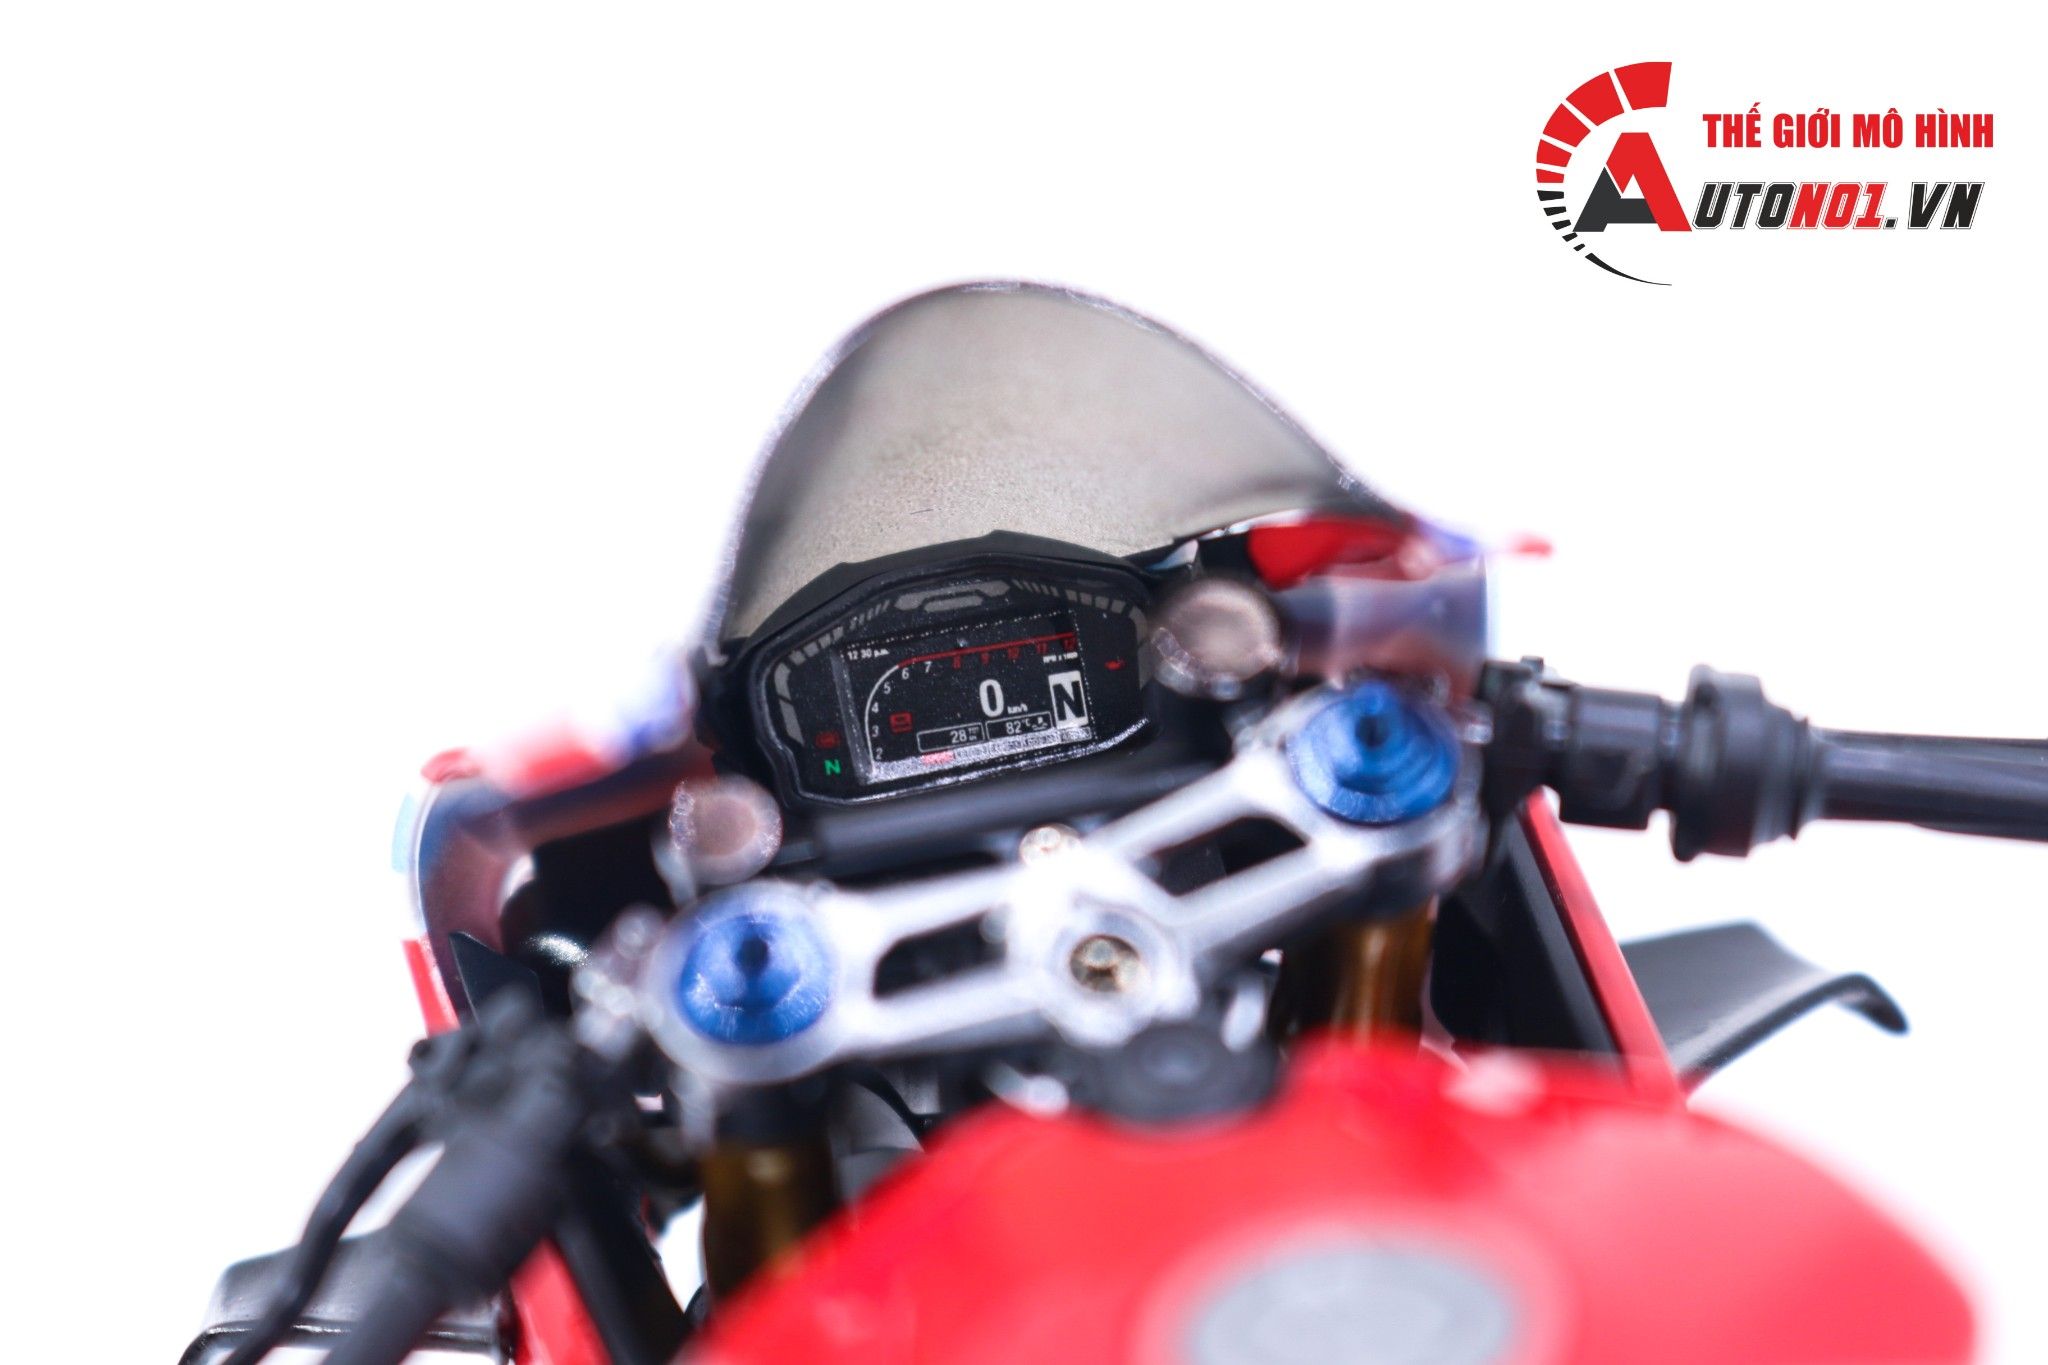  Mô hình xe cao cấp Ducati 1199 Corse Carbon 1:12 Tamiya D100 